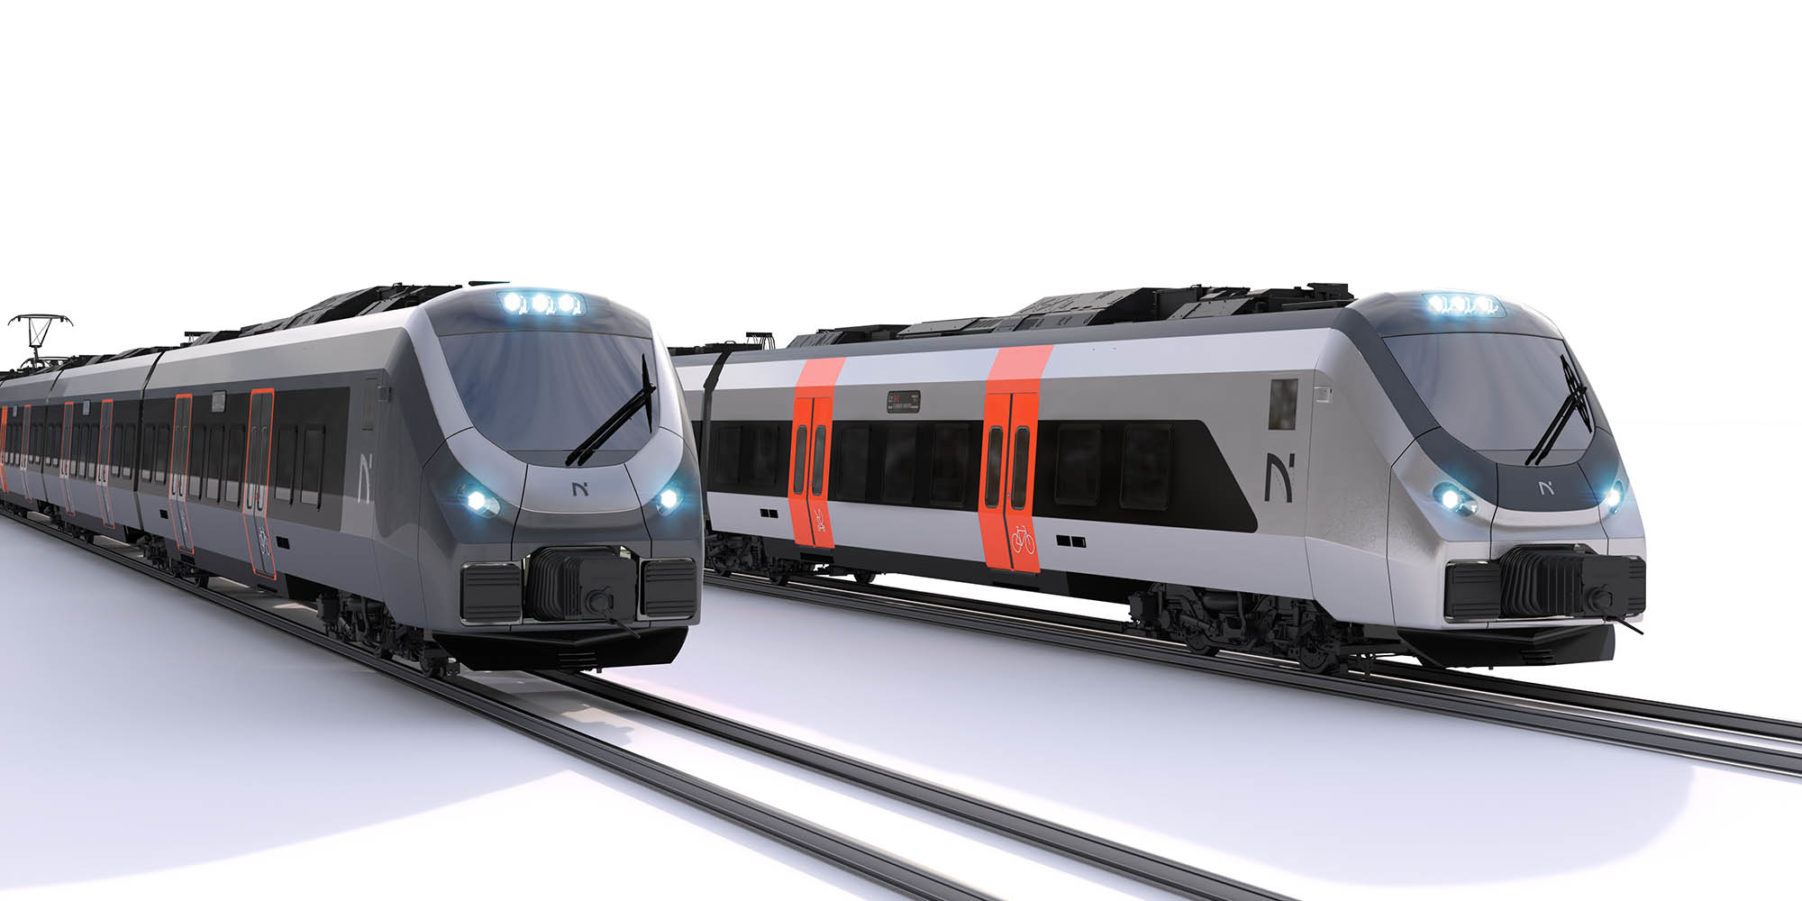 Tegning av de nye togsettene, sett forfra.